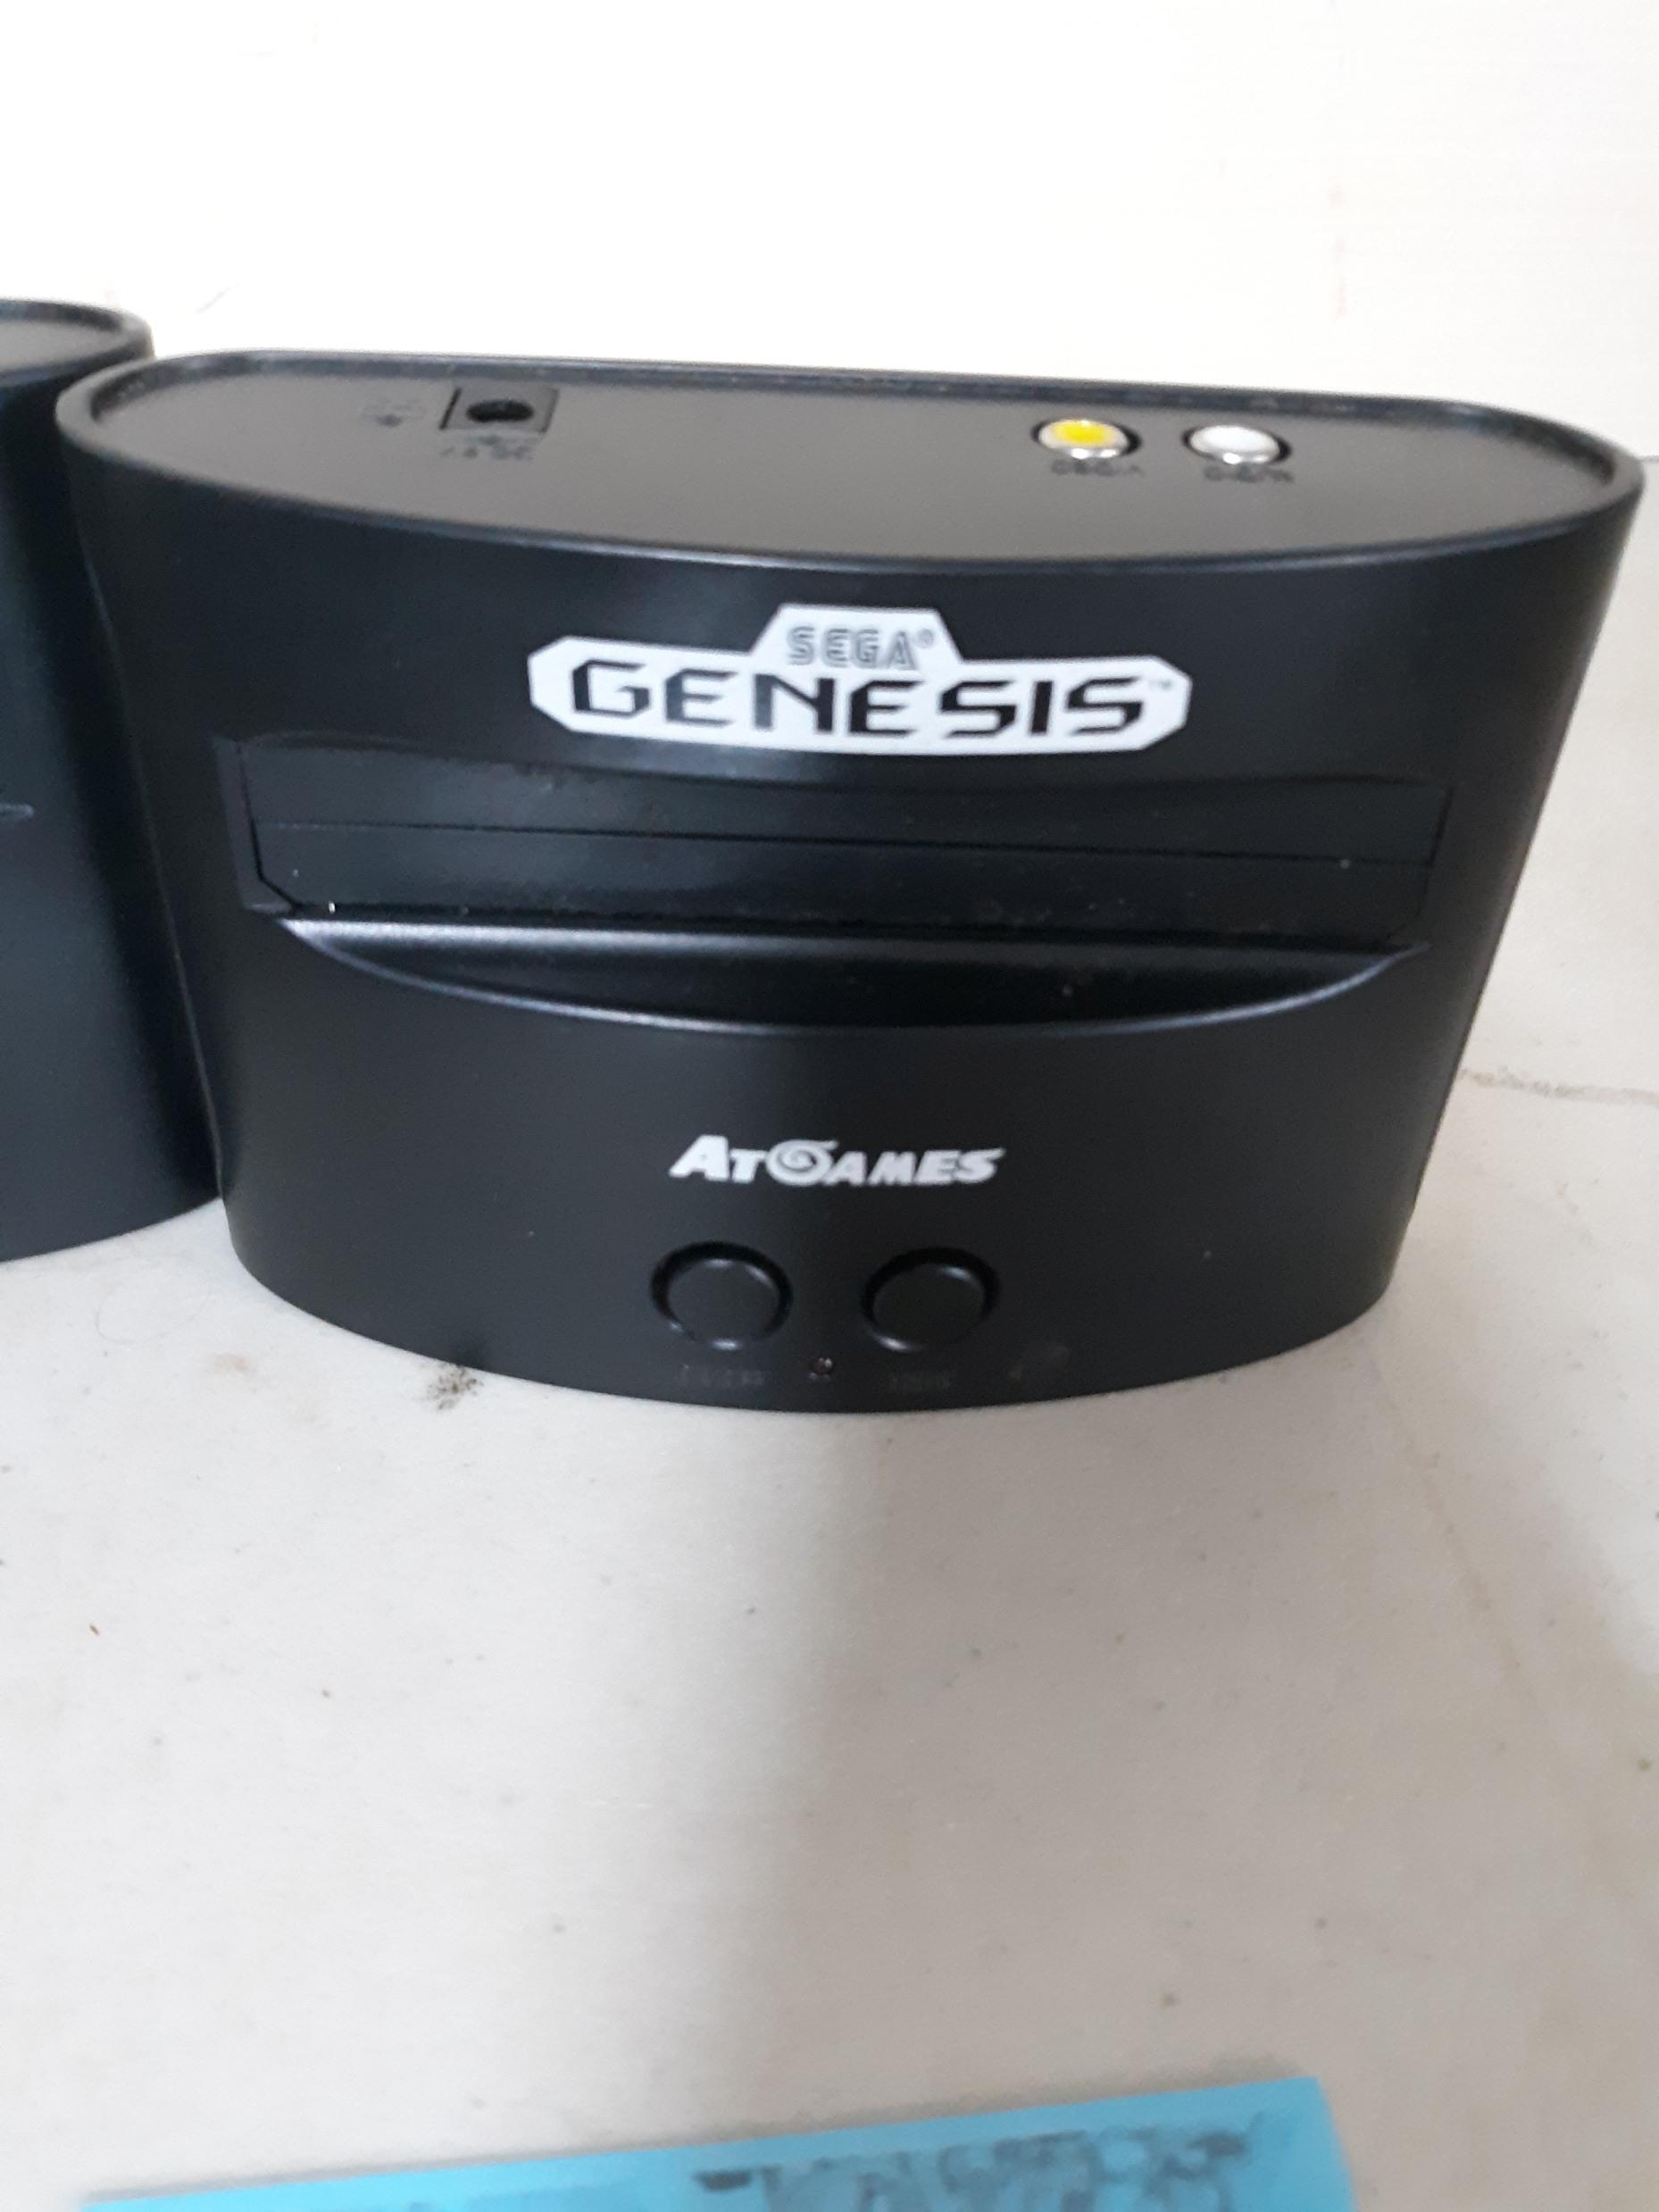 Sega Genesis Classic Game Consoles